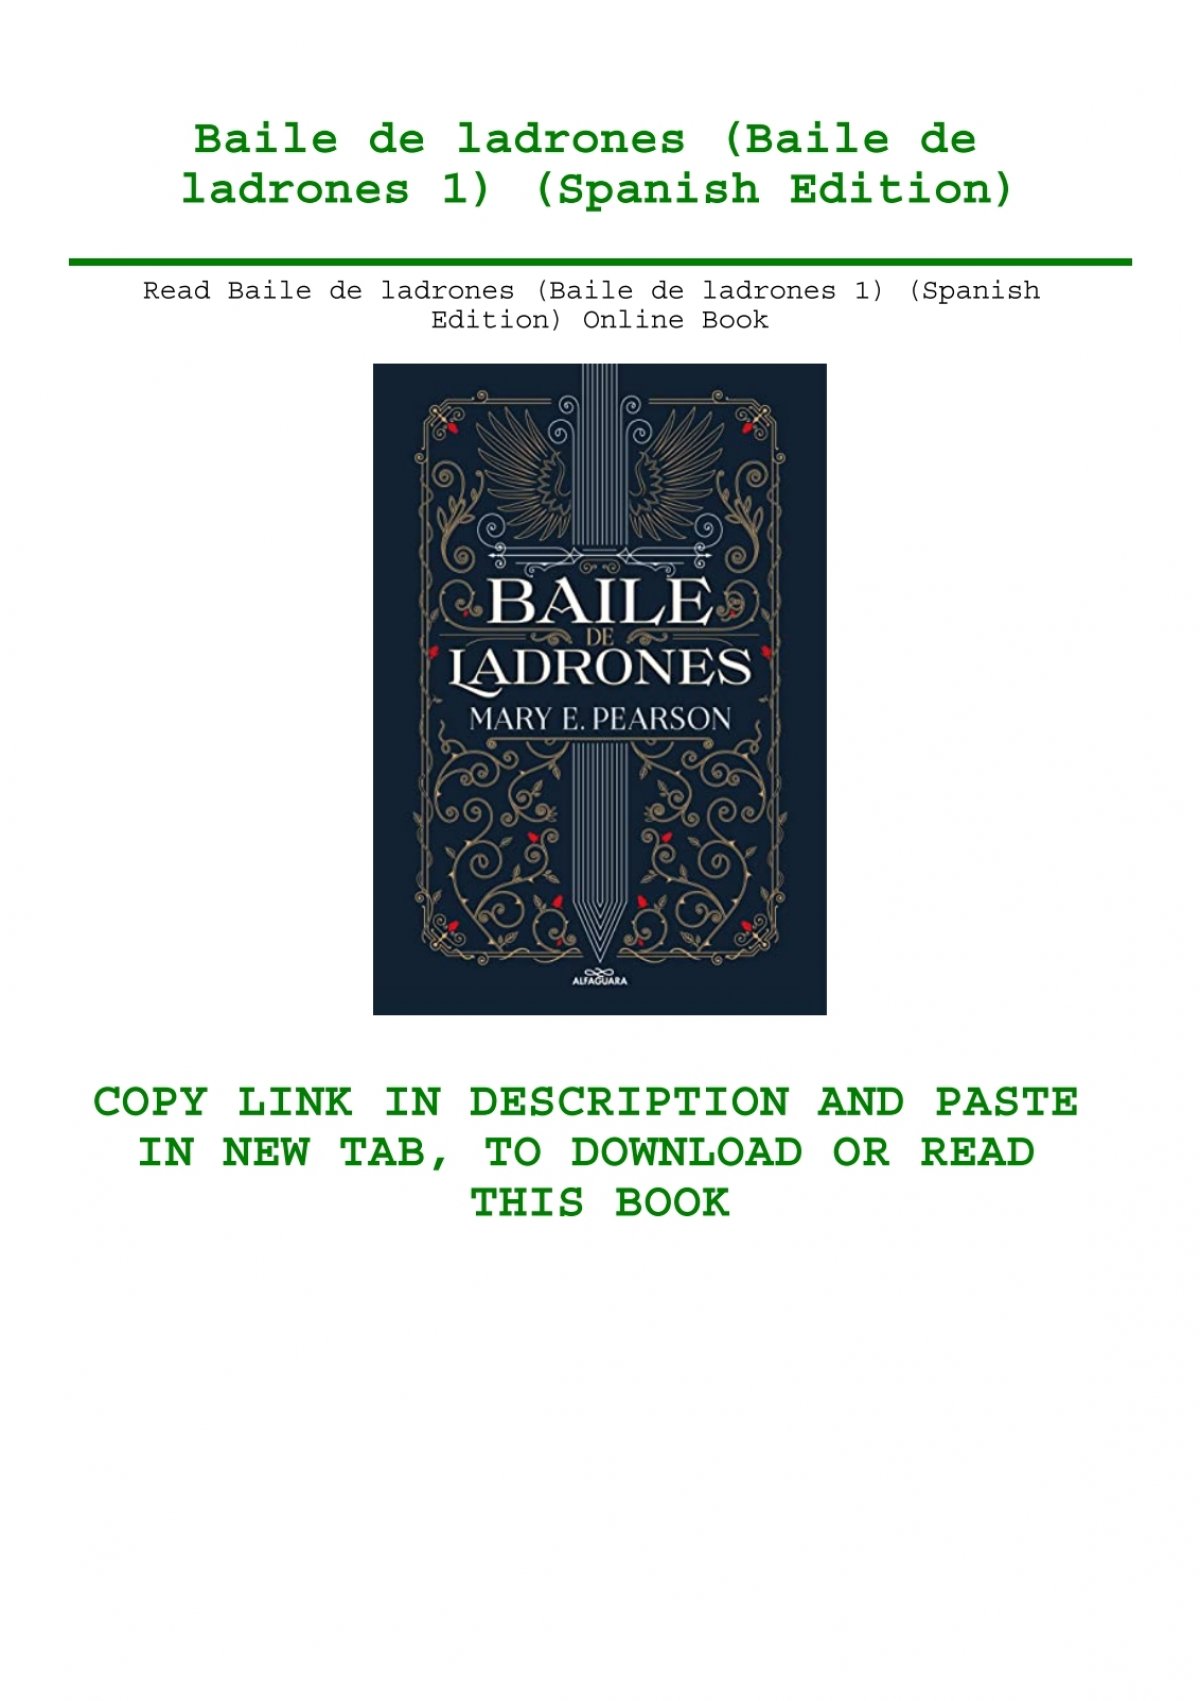 Read Baile de ladrones (Baile de ladrones 1) (Spanish Edition) Online Book